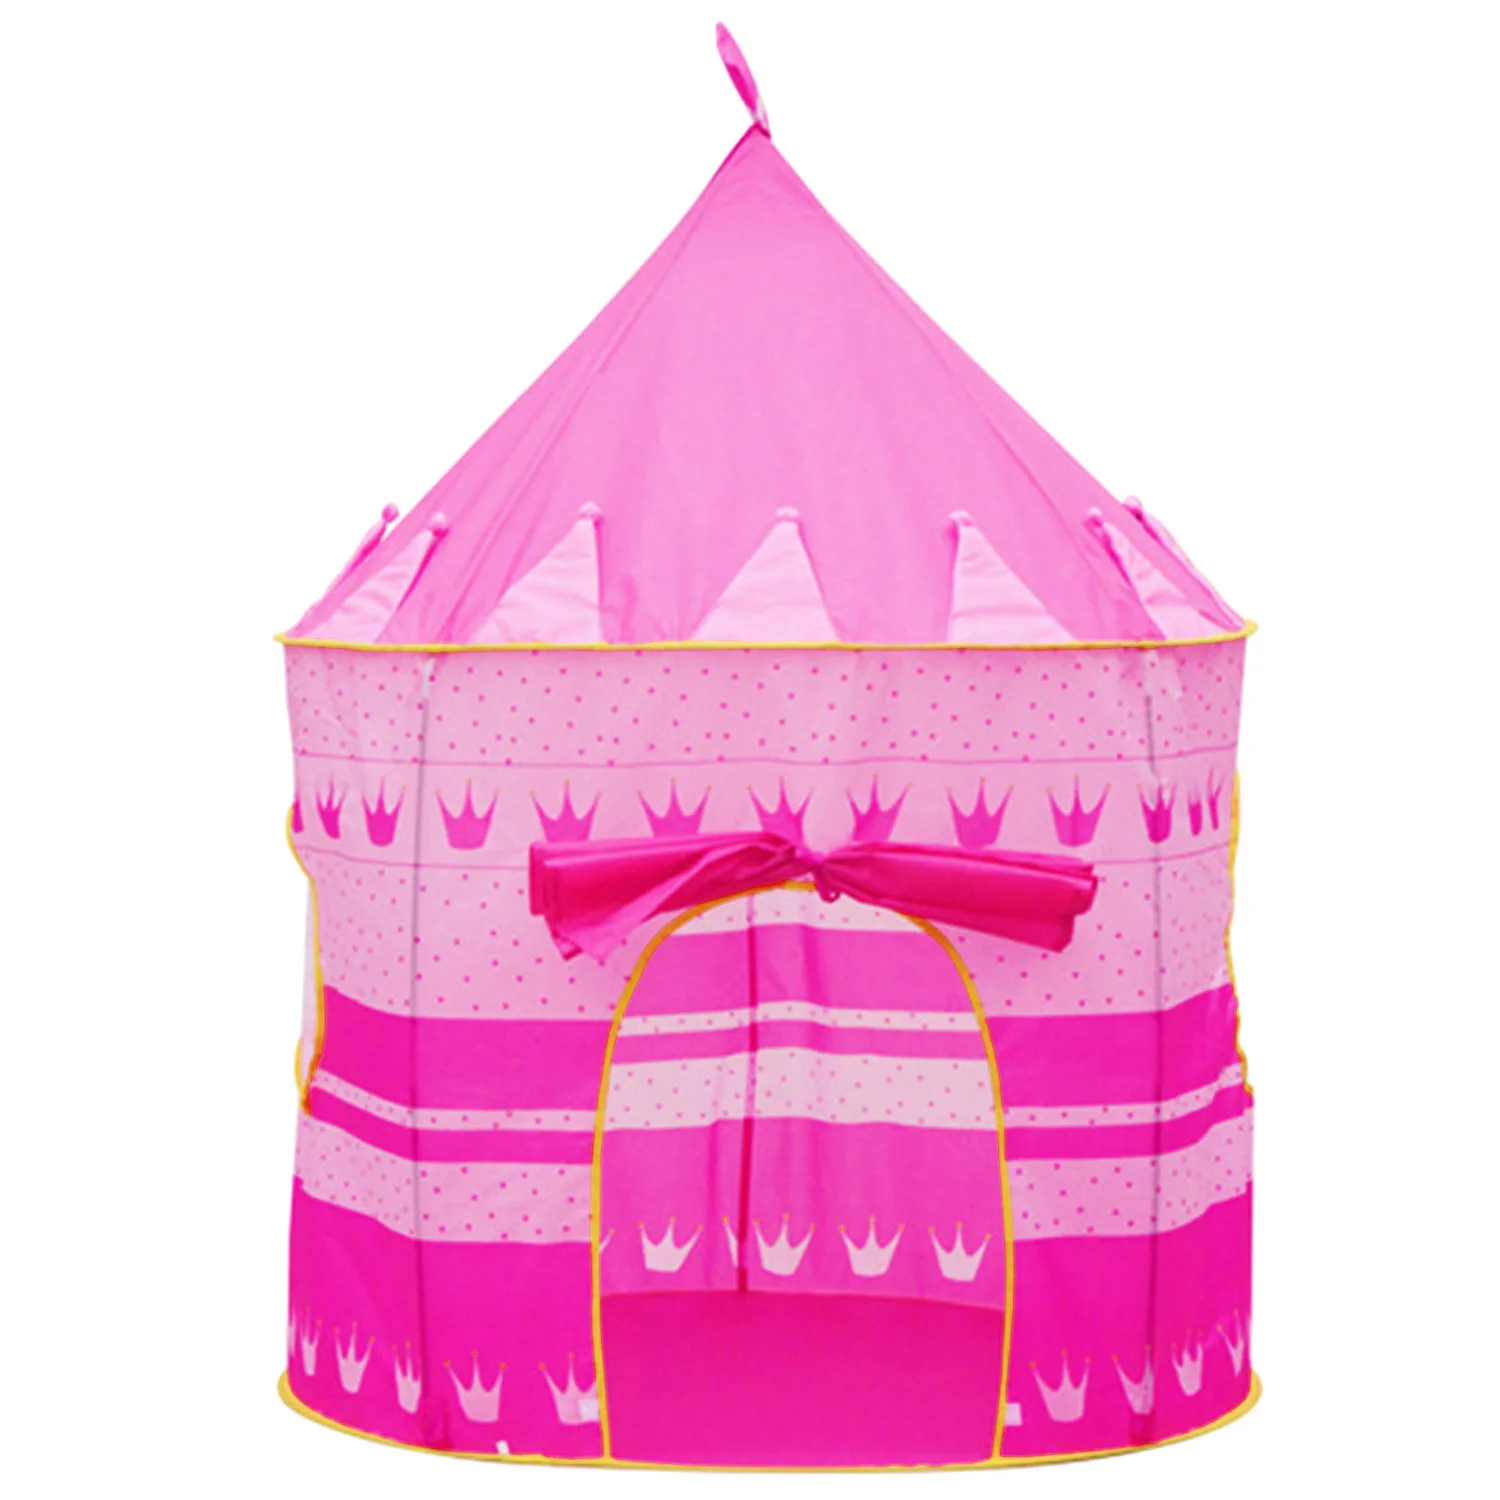 Забавный милый складной всплывающий детский игровой палаточный домик для игр замок с чехлом для переноски для малышей детей Крытый Открытый игрушки - Цвет: Pink